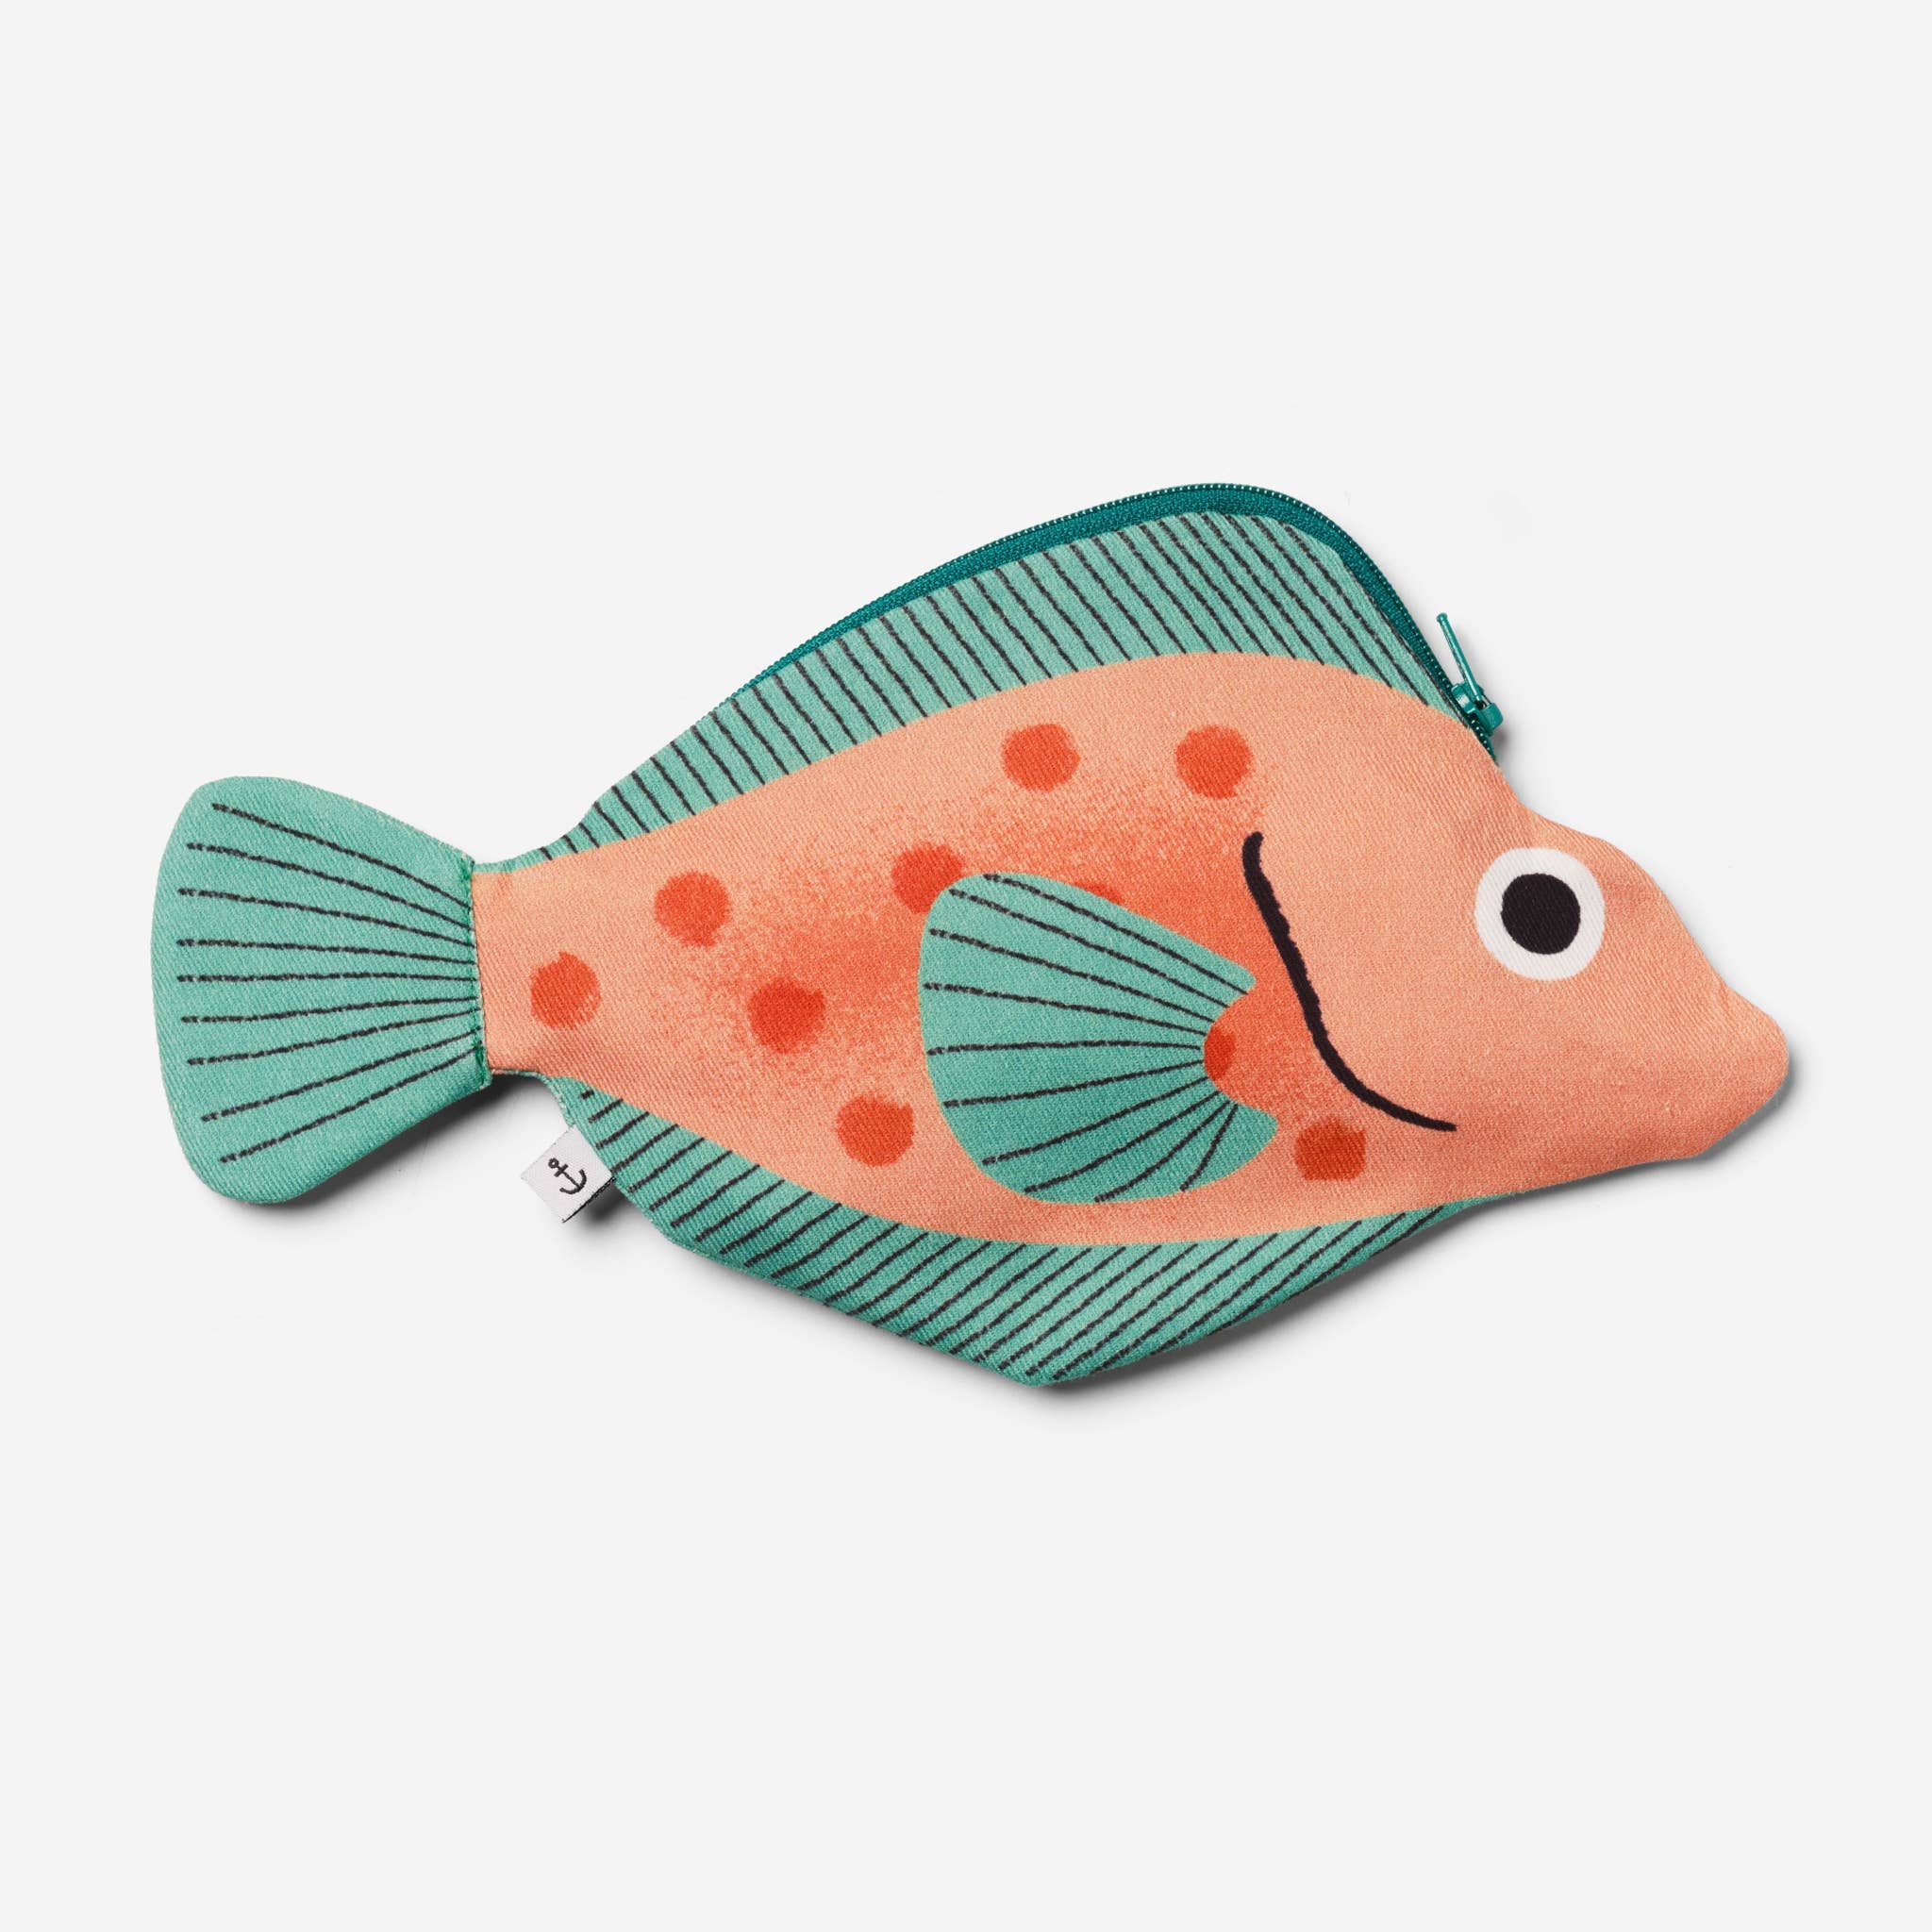 Rosefish case